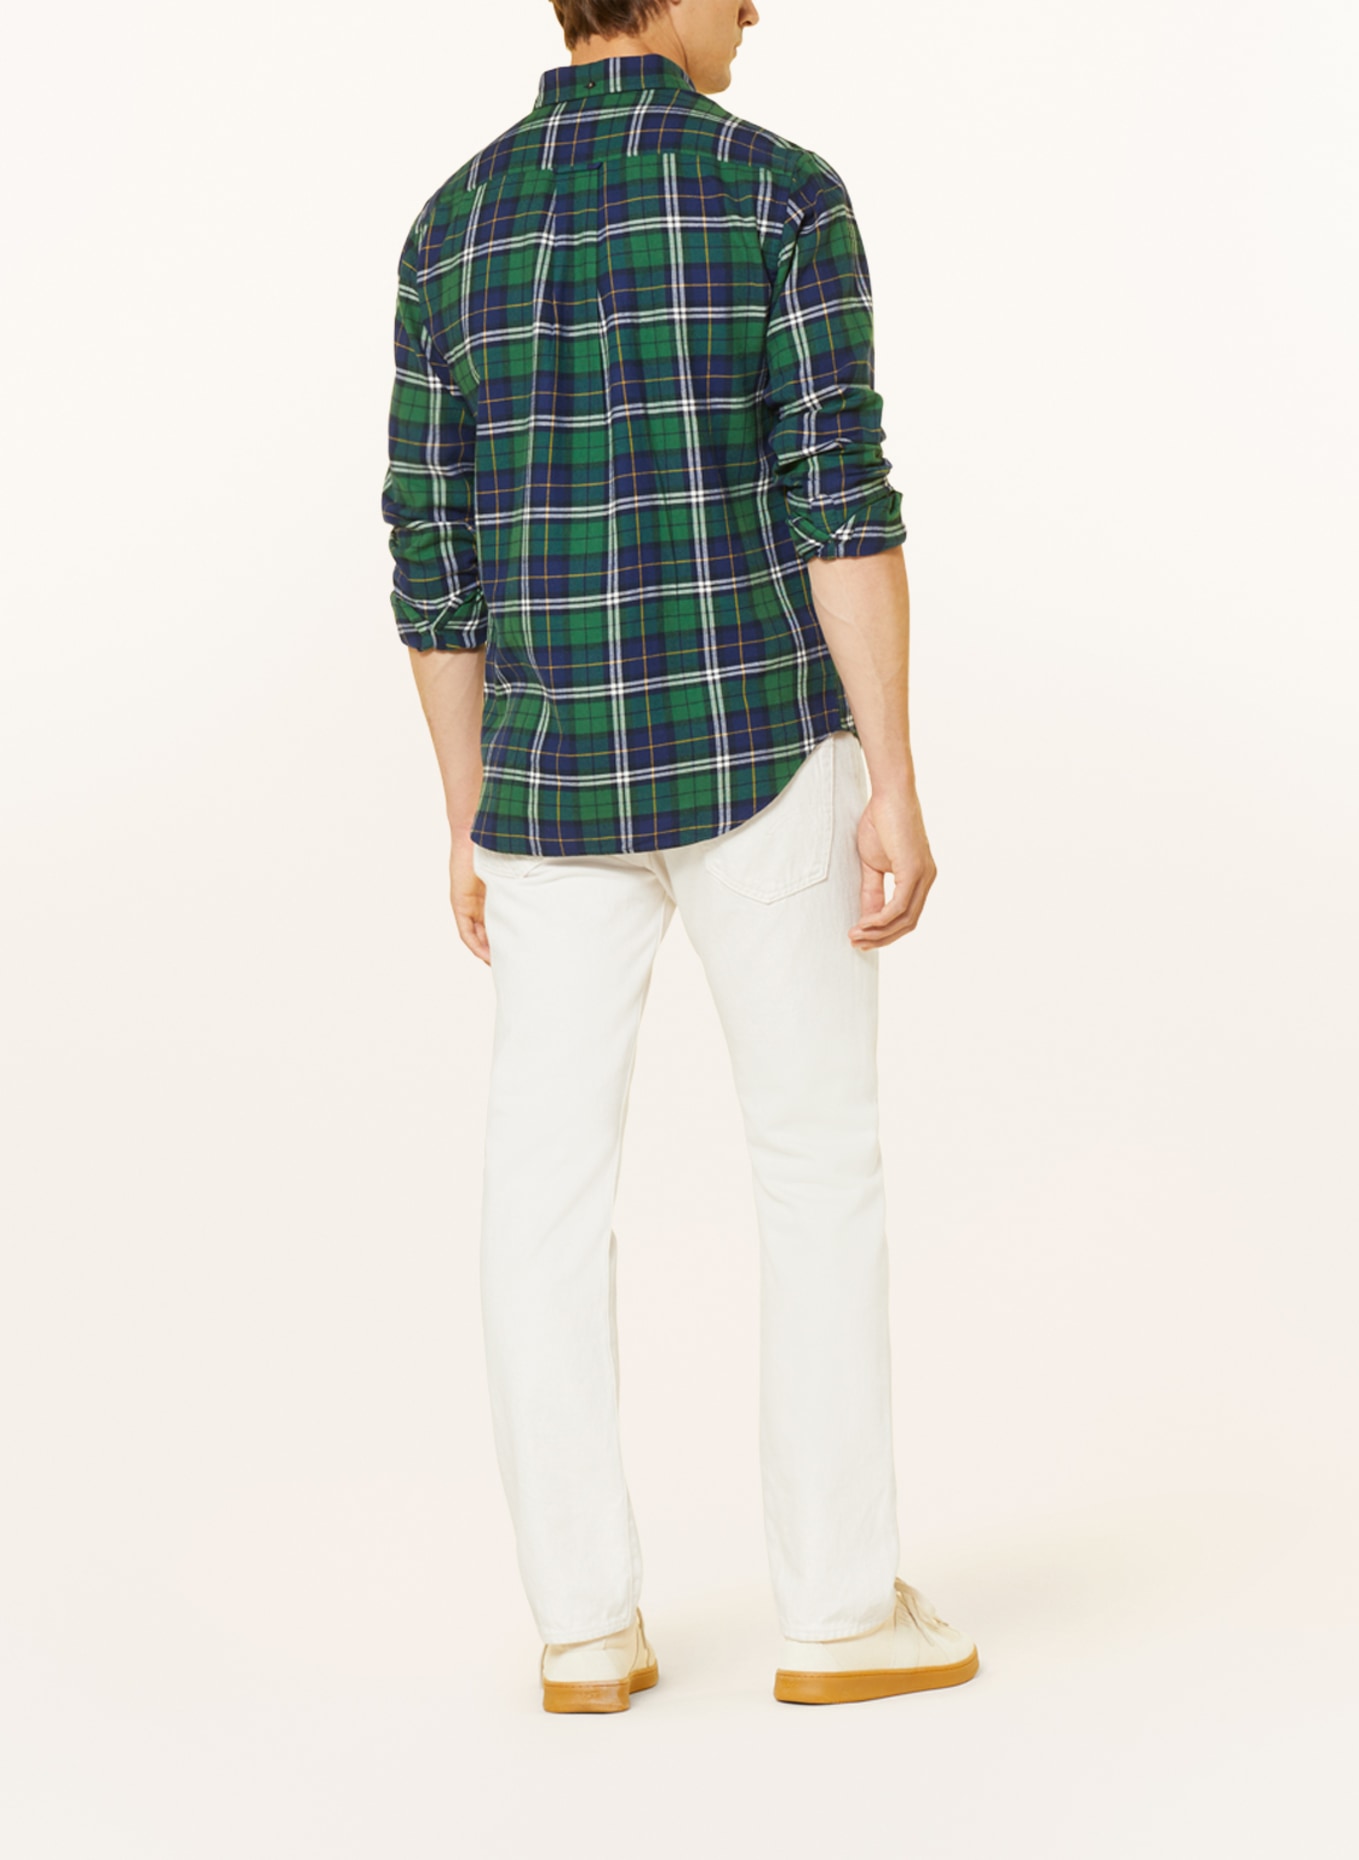 GANT Flannel shirt regular fit, Color: DARK BLUE/ GREEN/ WHITE (Image 3)